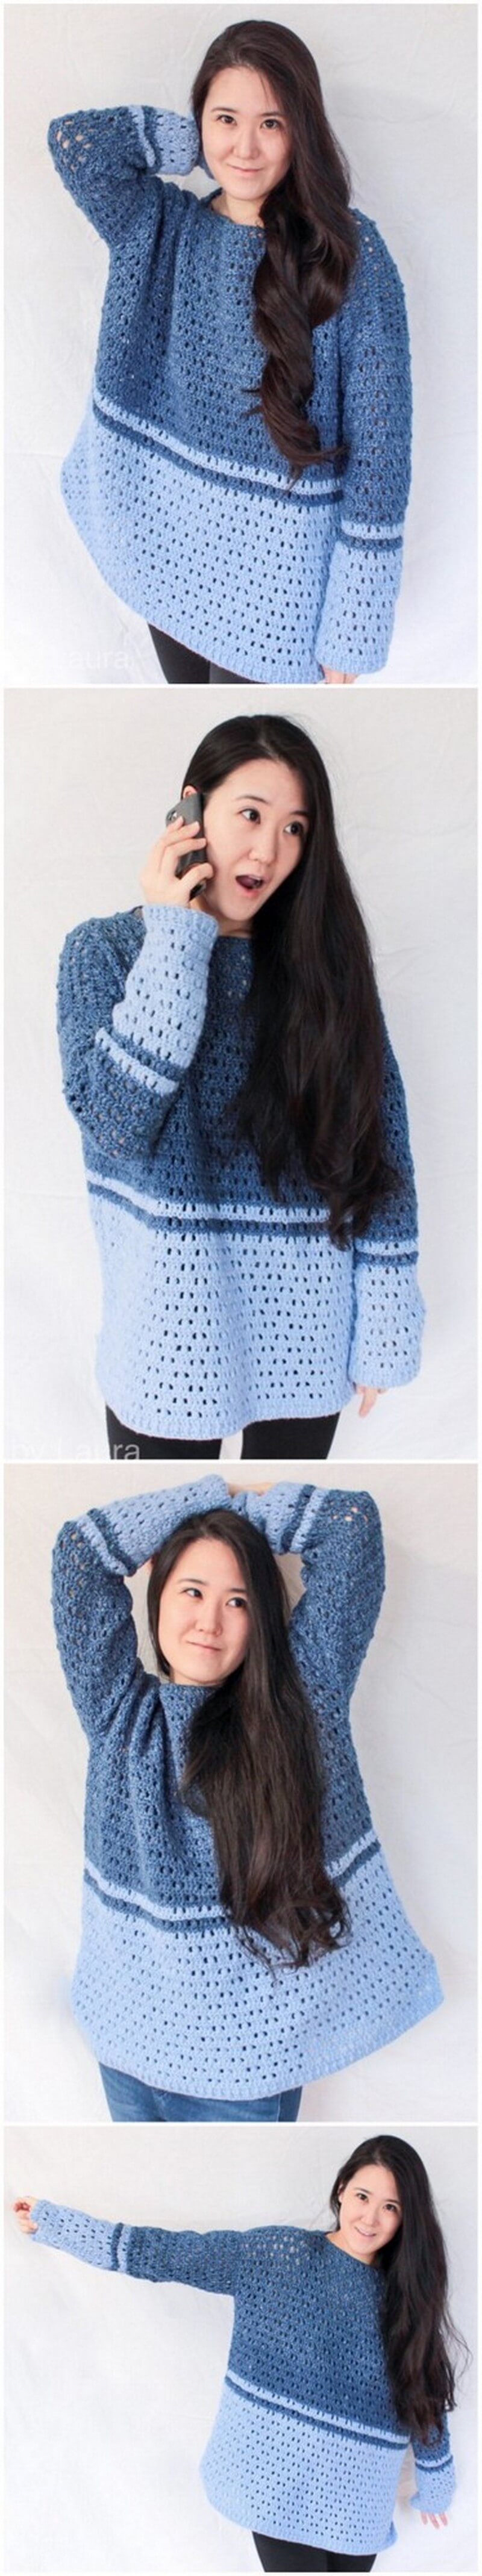 Crochet Sweater Pattern (25)